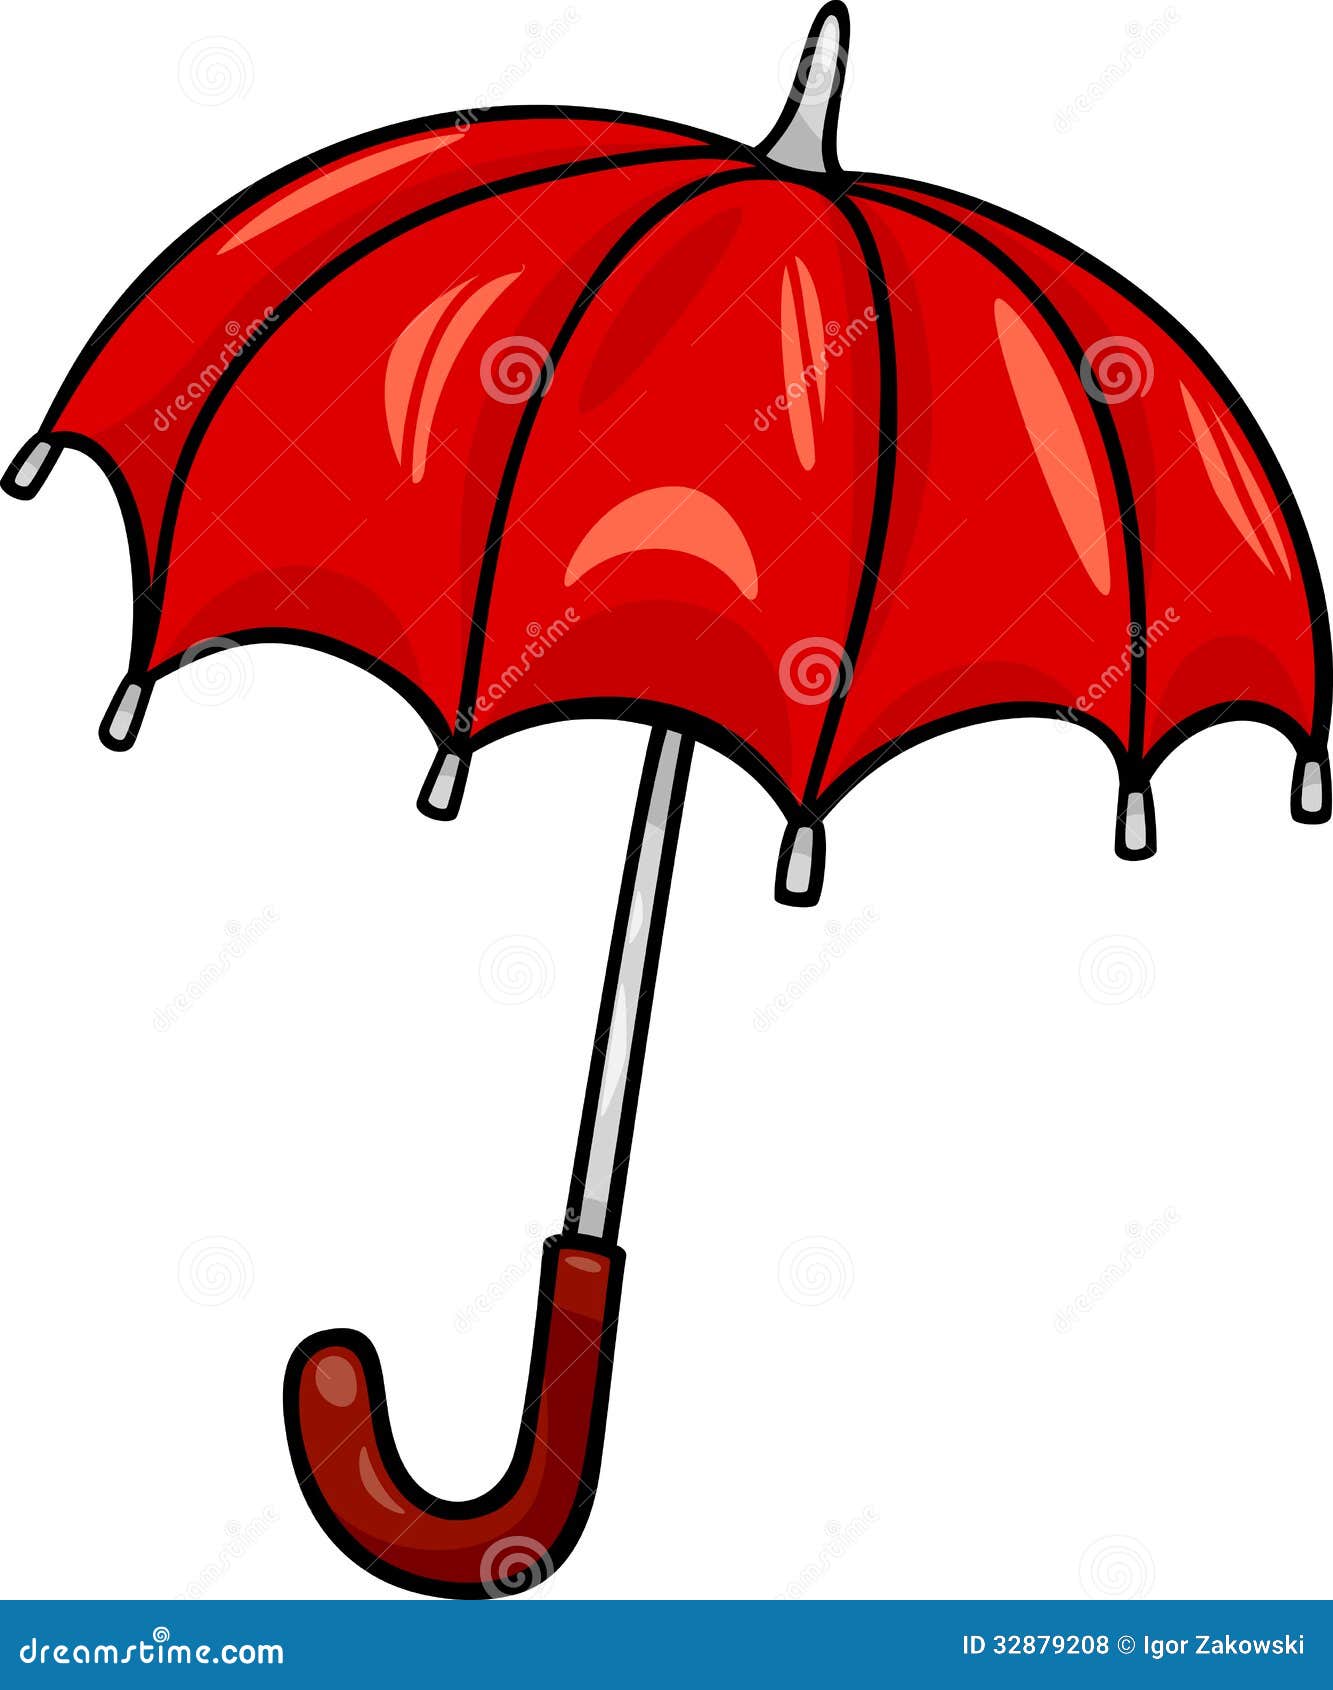 umbrella cartoon clipart - photo #32